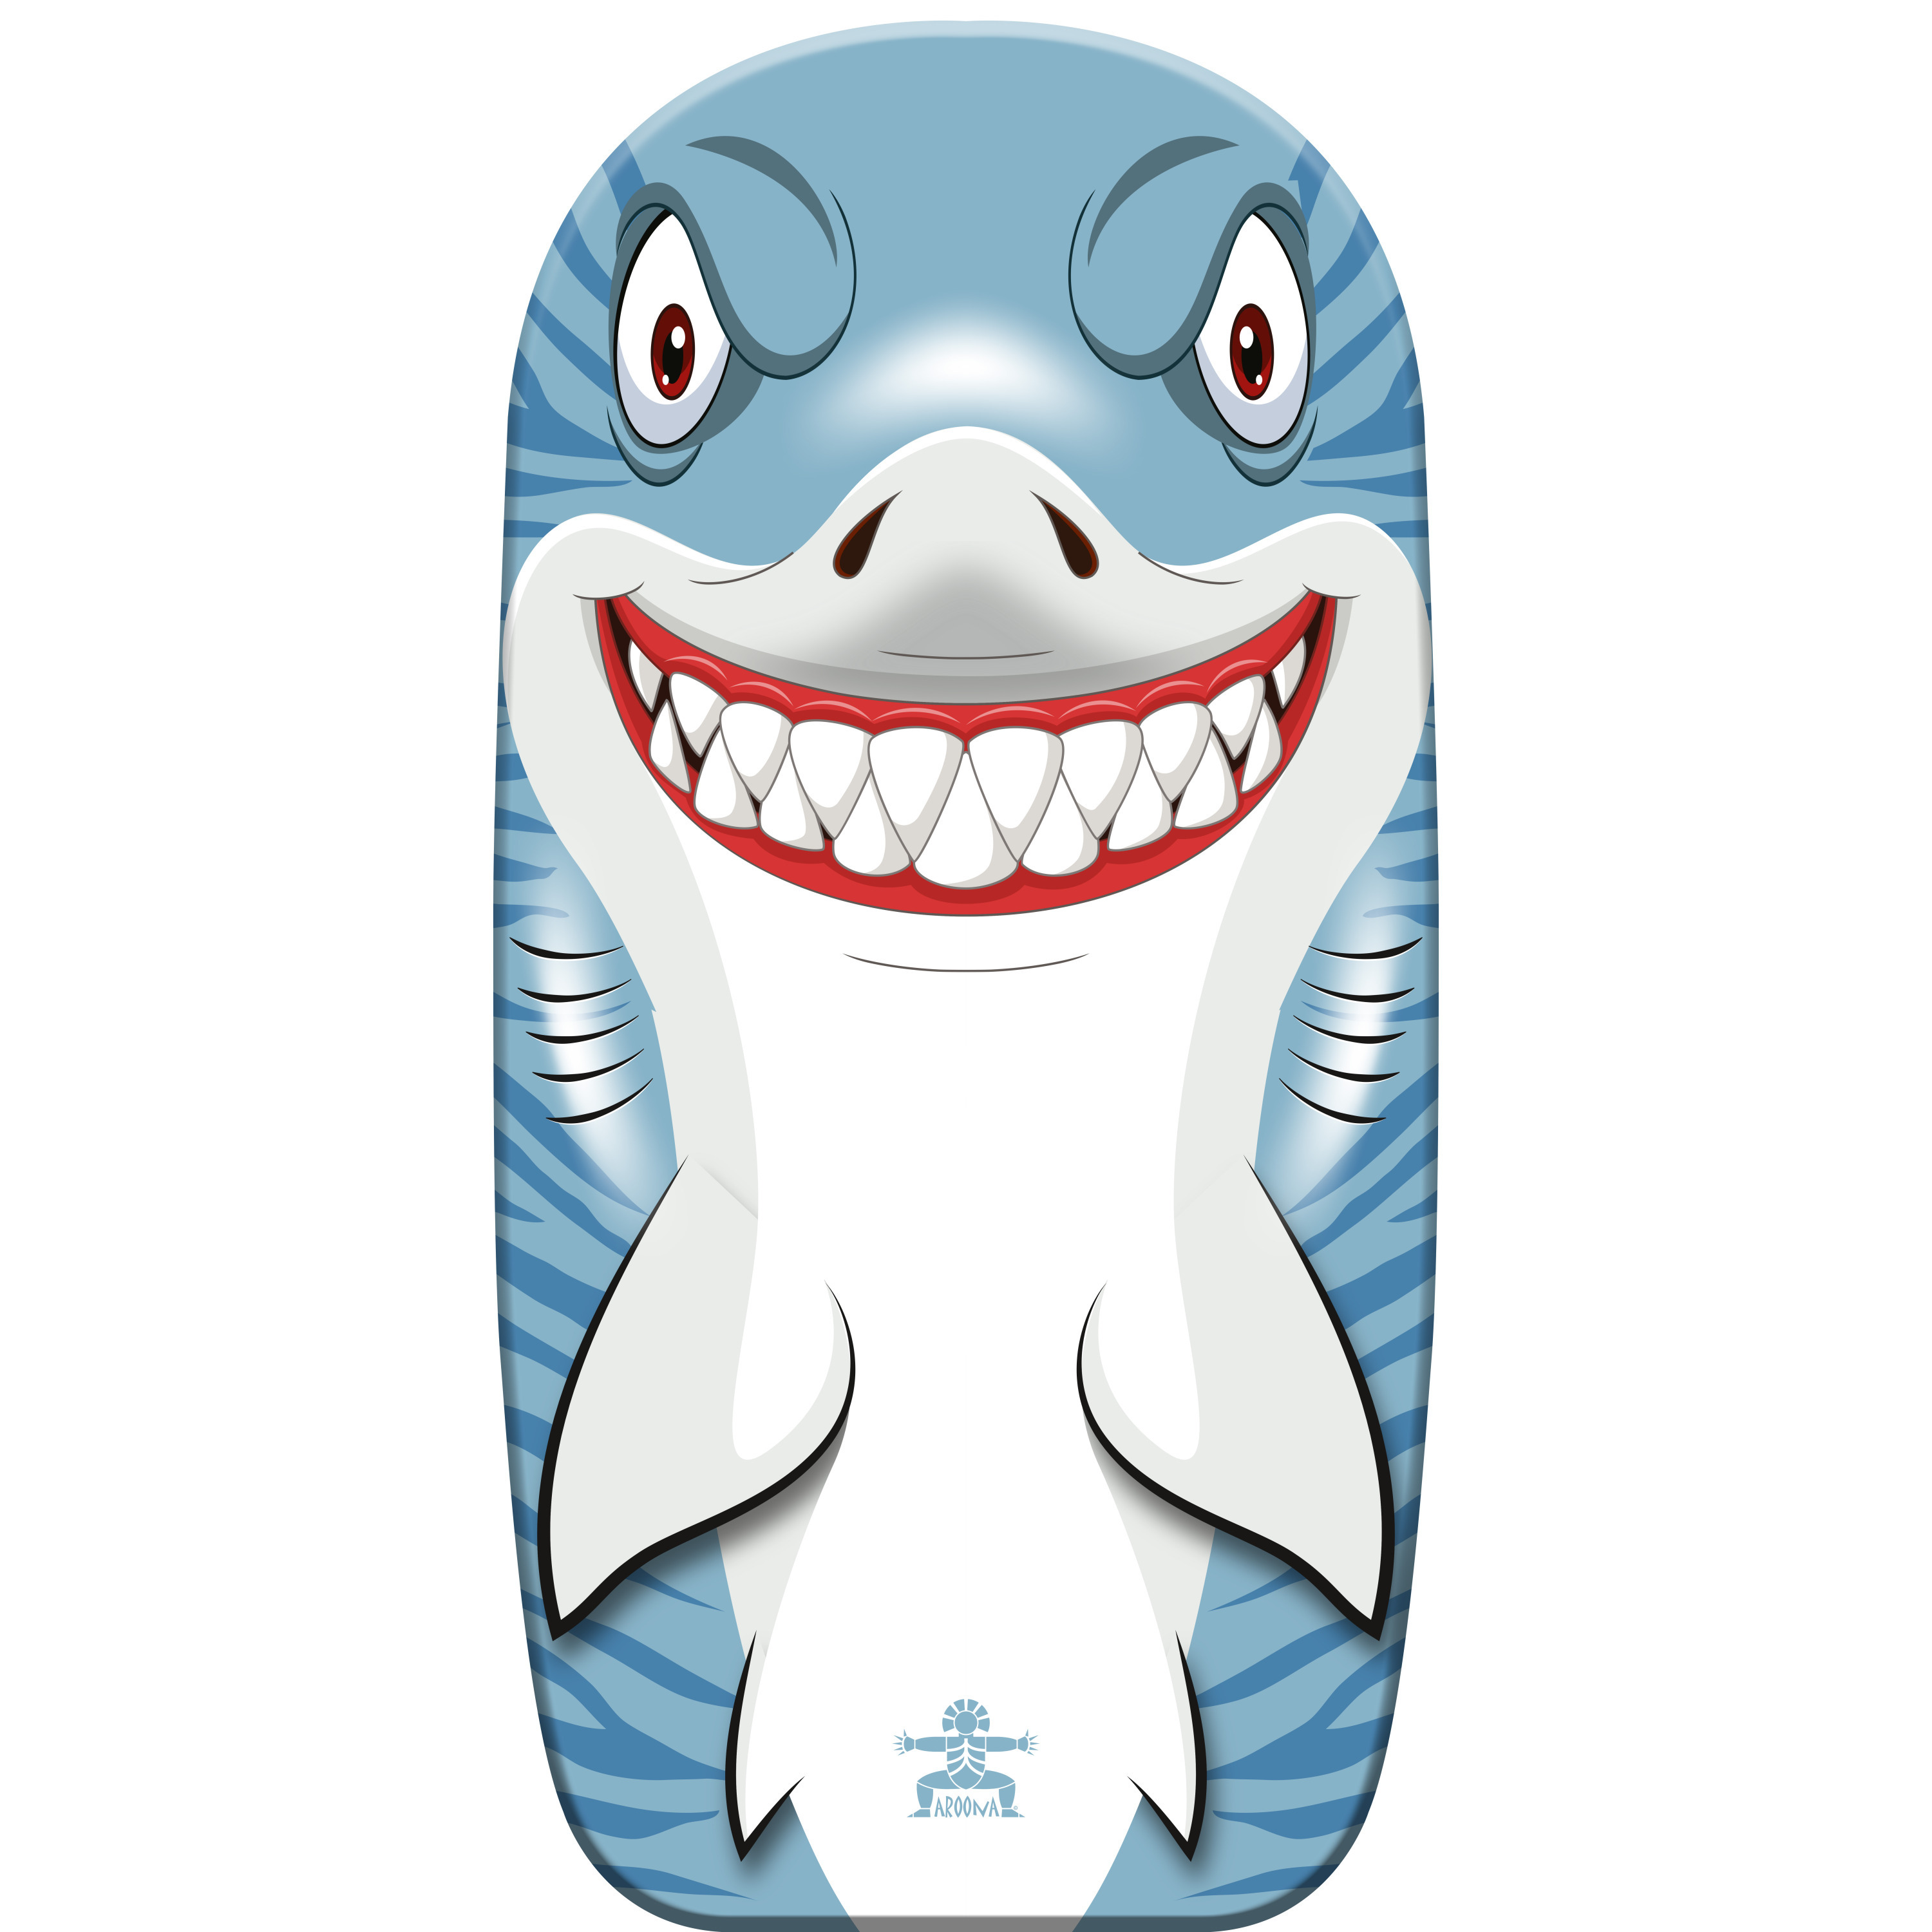 Gebro Bodyboard haai kunststof lichtblauw-wit 82 x 46 cm